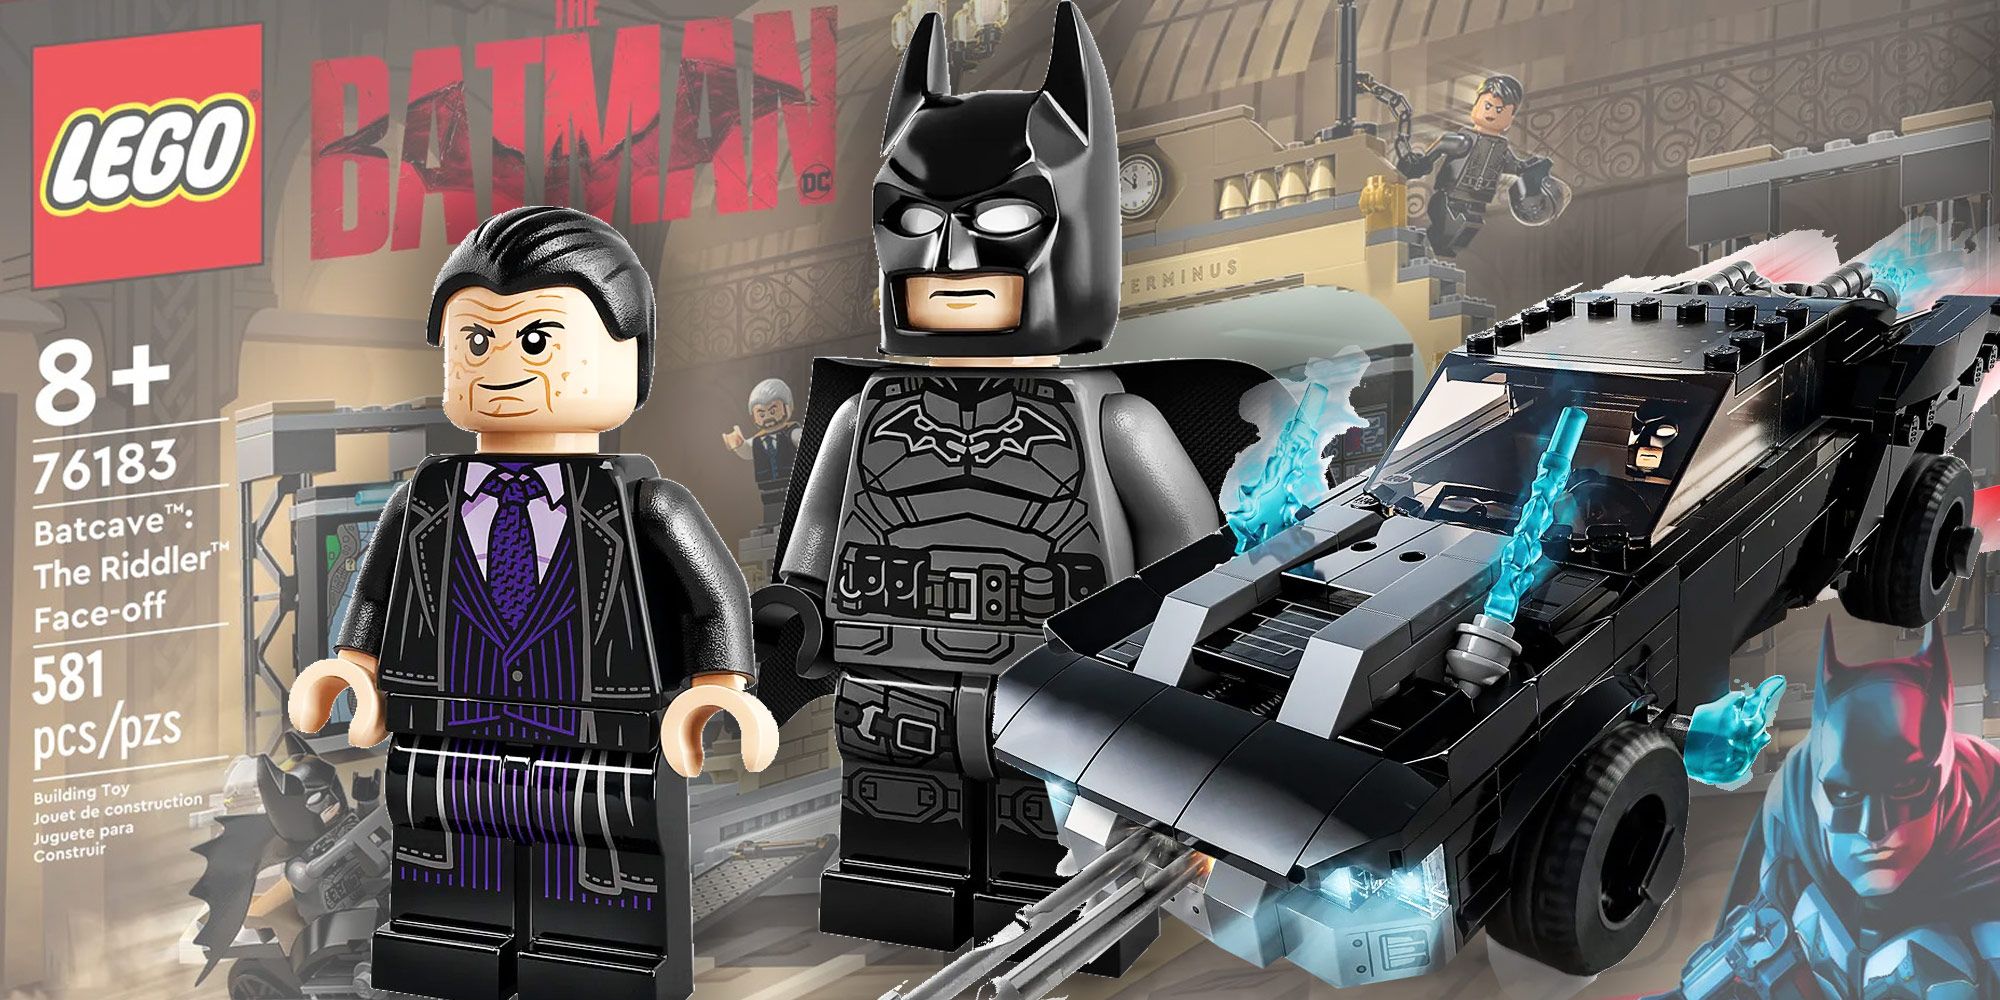 New LEGO Batman Movie Sets Revealed - IGN